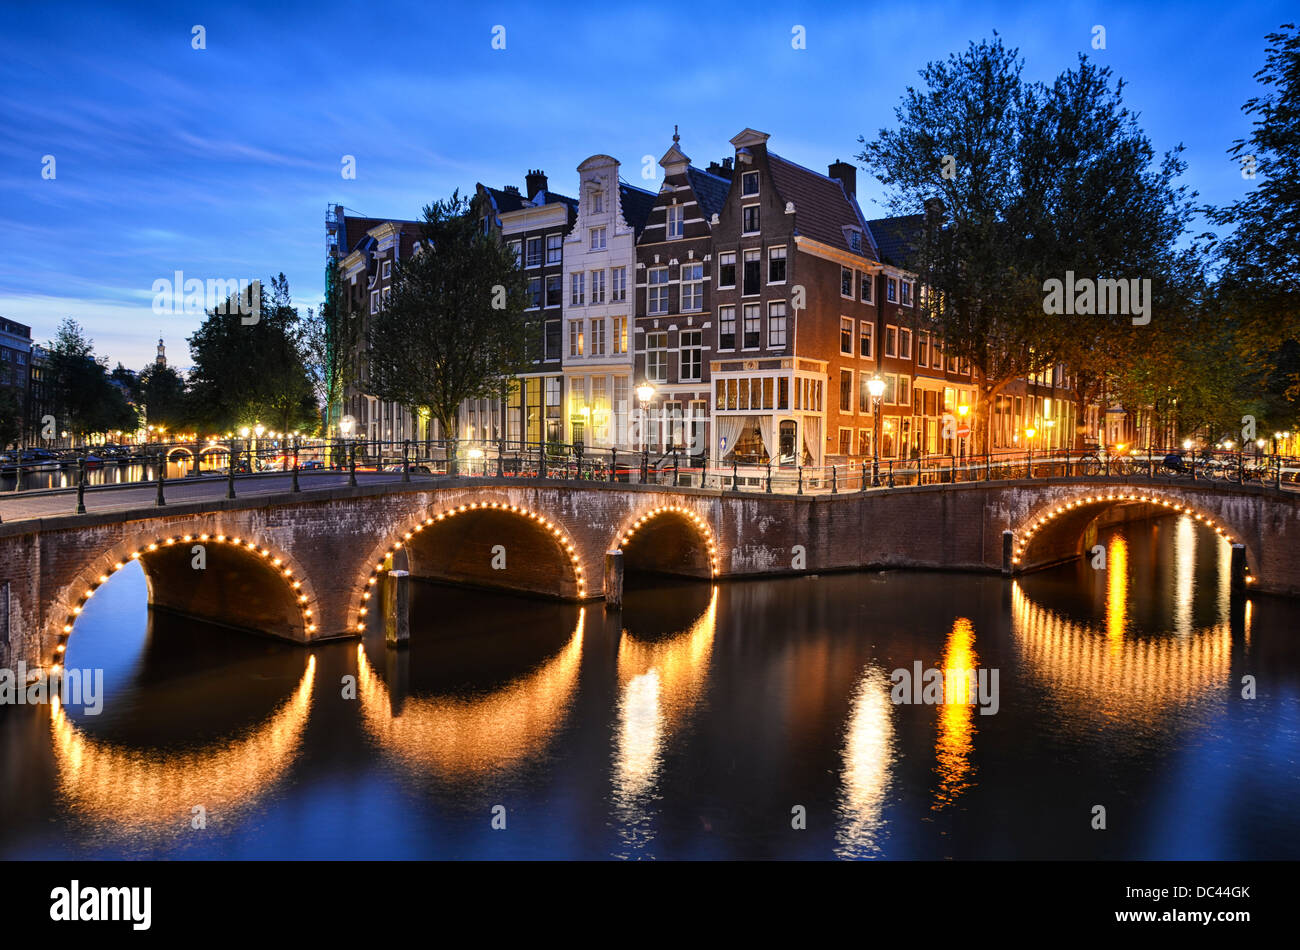 Nacht-Szene an einem Kanal mit traditionellen Häusern und eine Bogenbrücke in Amsterdam, Niederlande Stockfoto